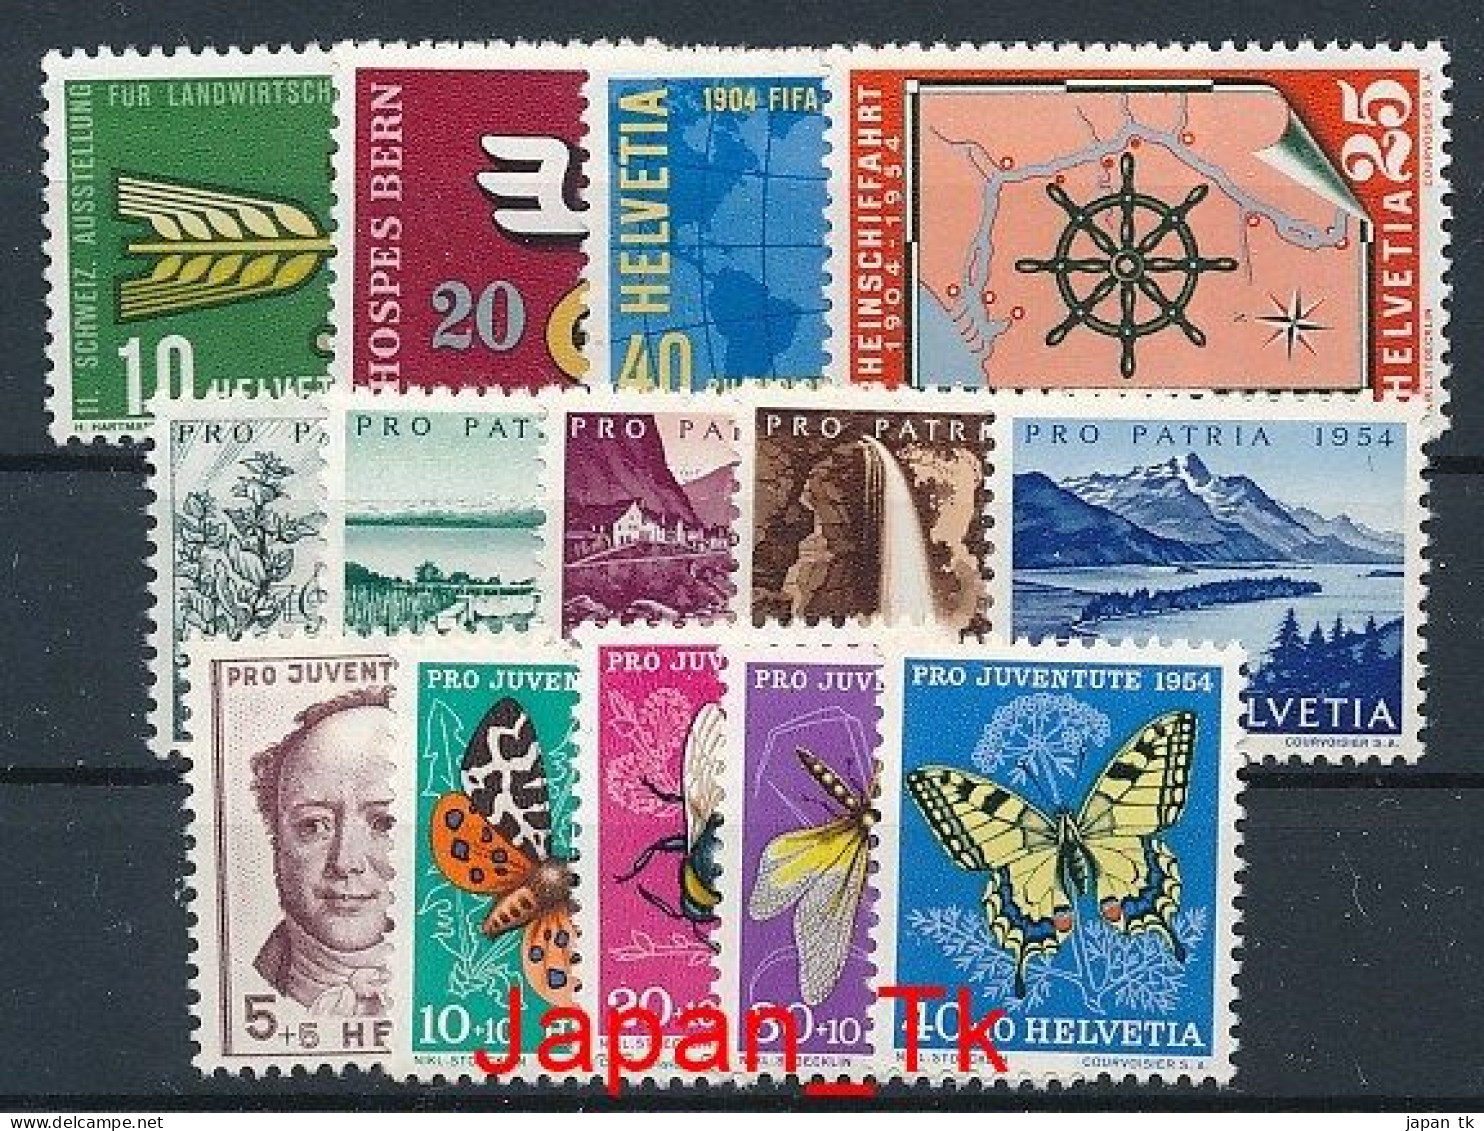 SCHWEIZ Mi. Nr. 593-606 Jahrgang 1954  - Siehe Scan - MNH - Unused Stamps